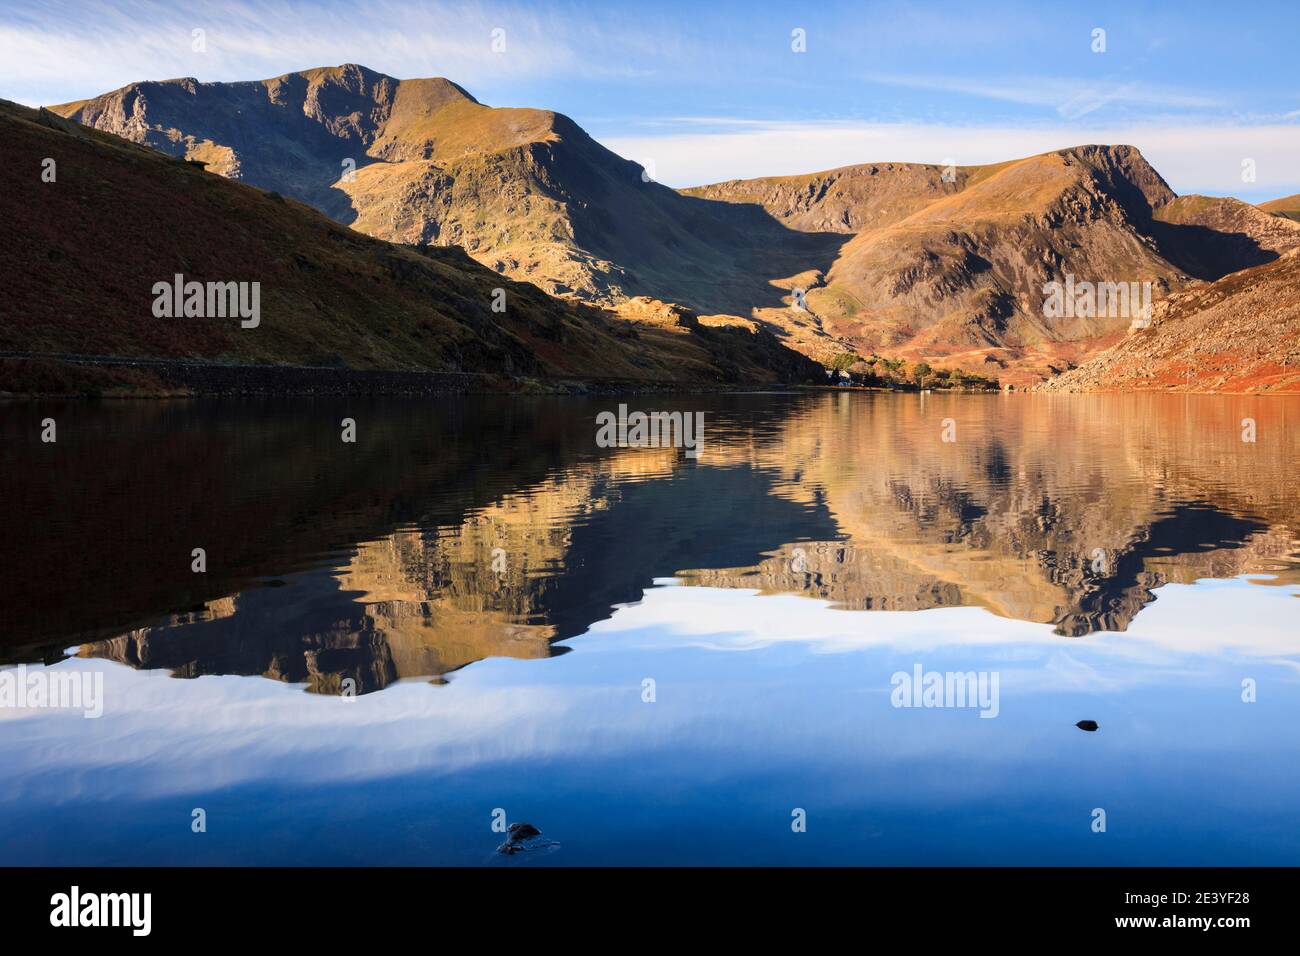 Eau encore du lac Llyn Ogwen reflétant les montagnes y Garn et Foel Goch dans le parc national de Snowdonia. Ogwen Valley, Gwynedd, pays de Galles du Nord, Royaume-Uni, Grande-Bretagne Banque D'Images